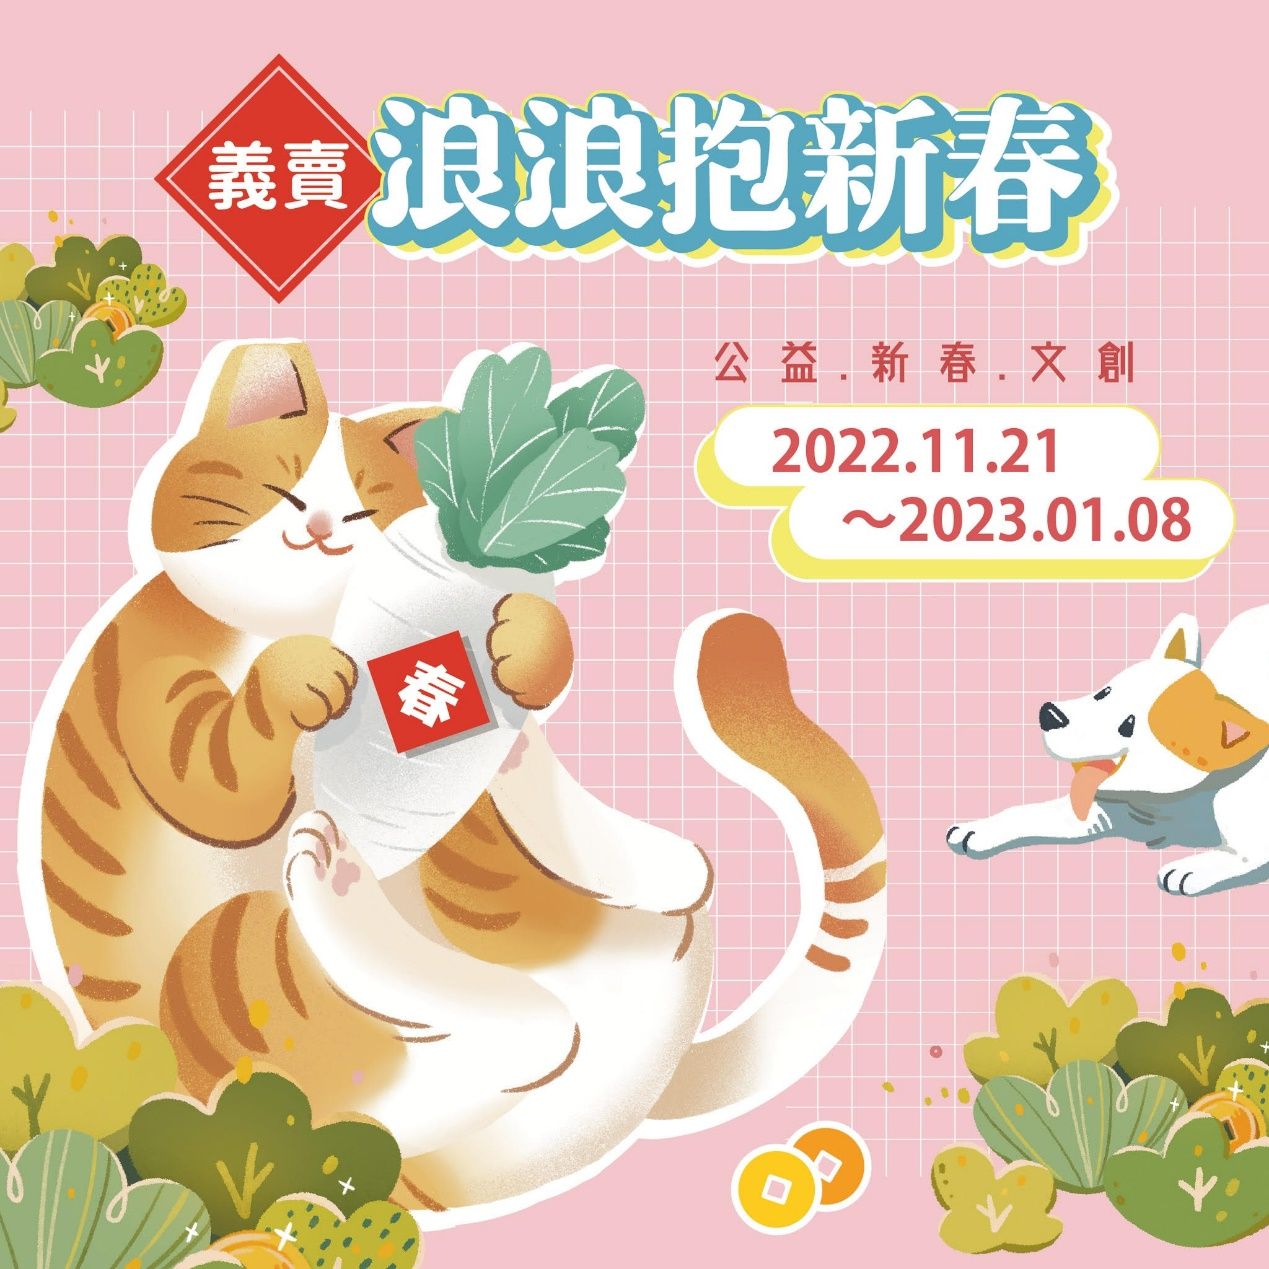 圖／台灣之心愛護動物協會提供大檸檬使用